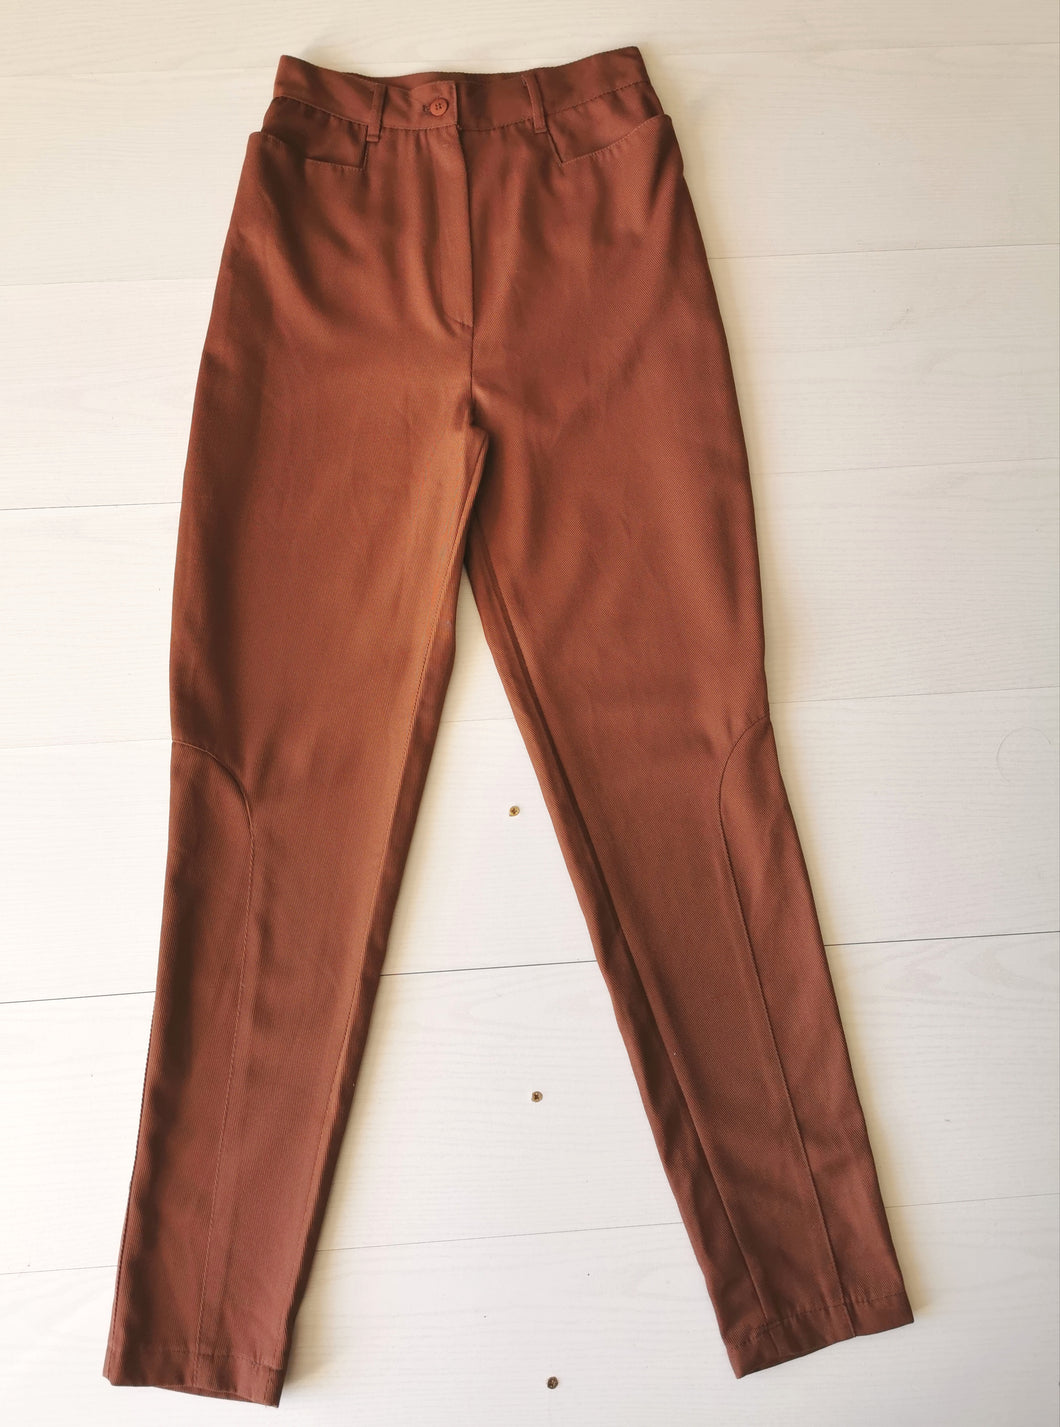 pantalon cavalier taille haute,coloris tabac,  vintage 80's  taille 34